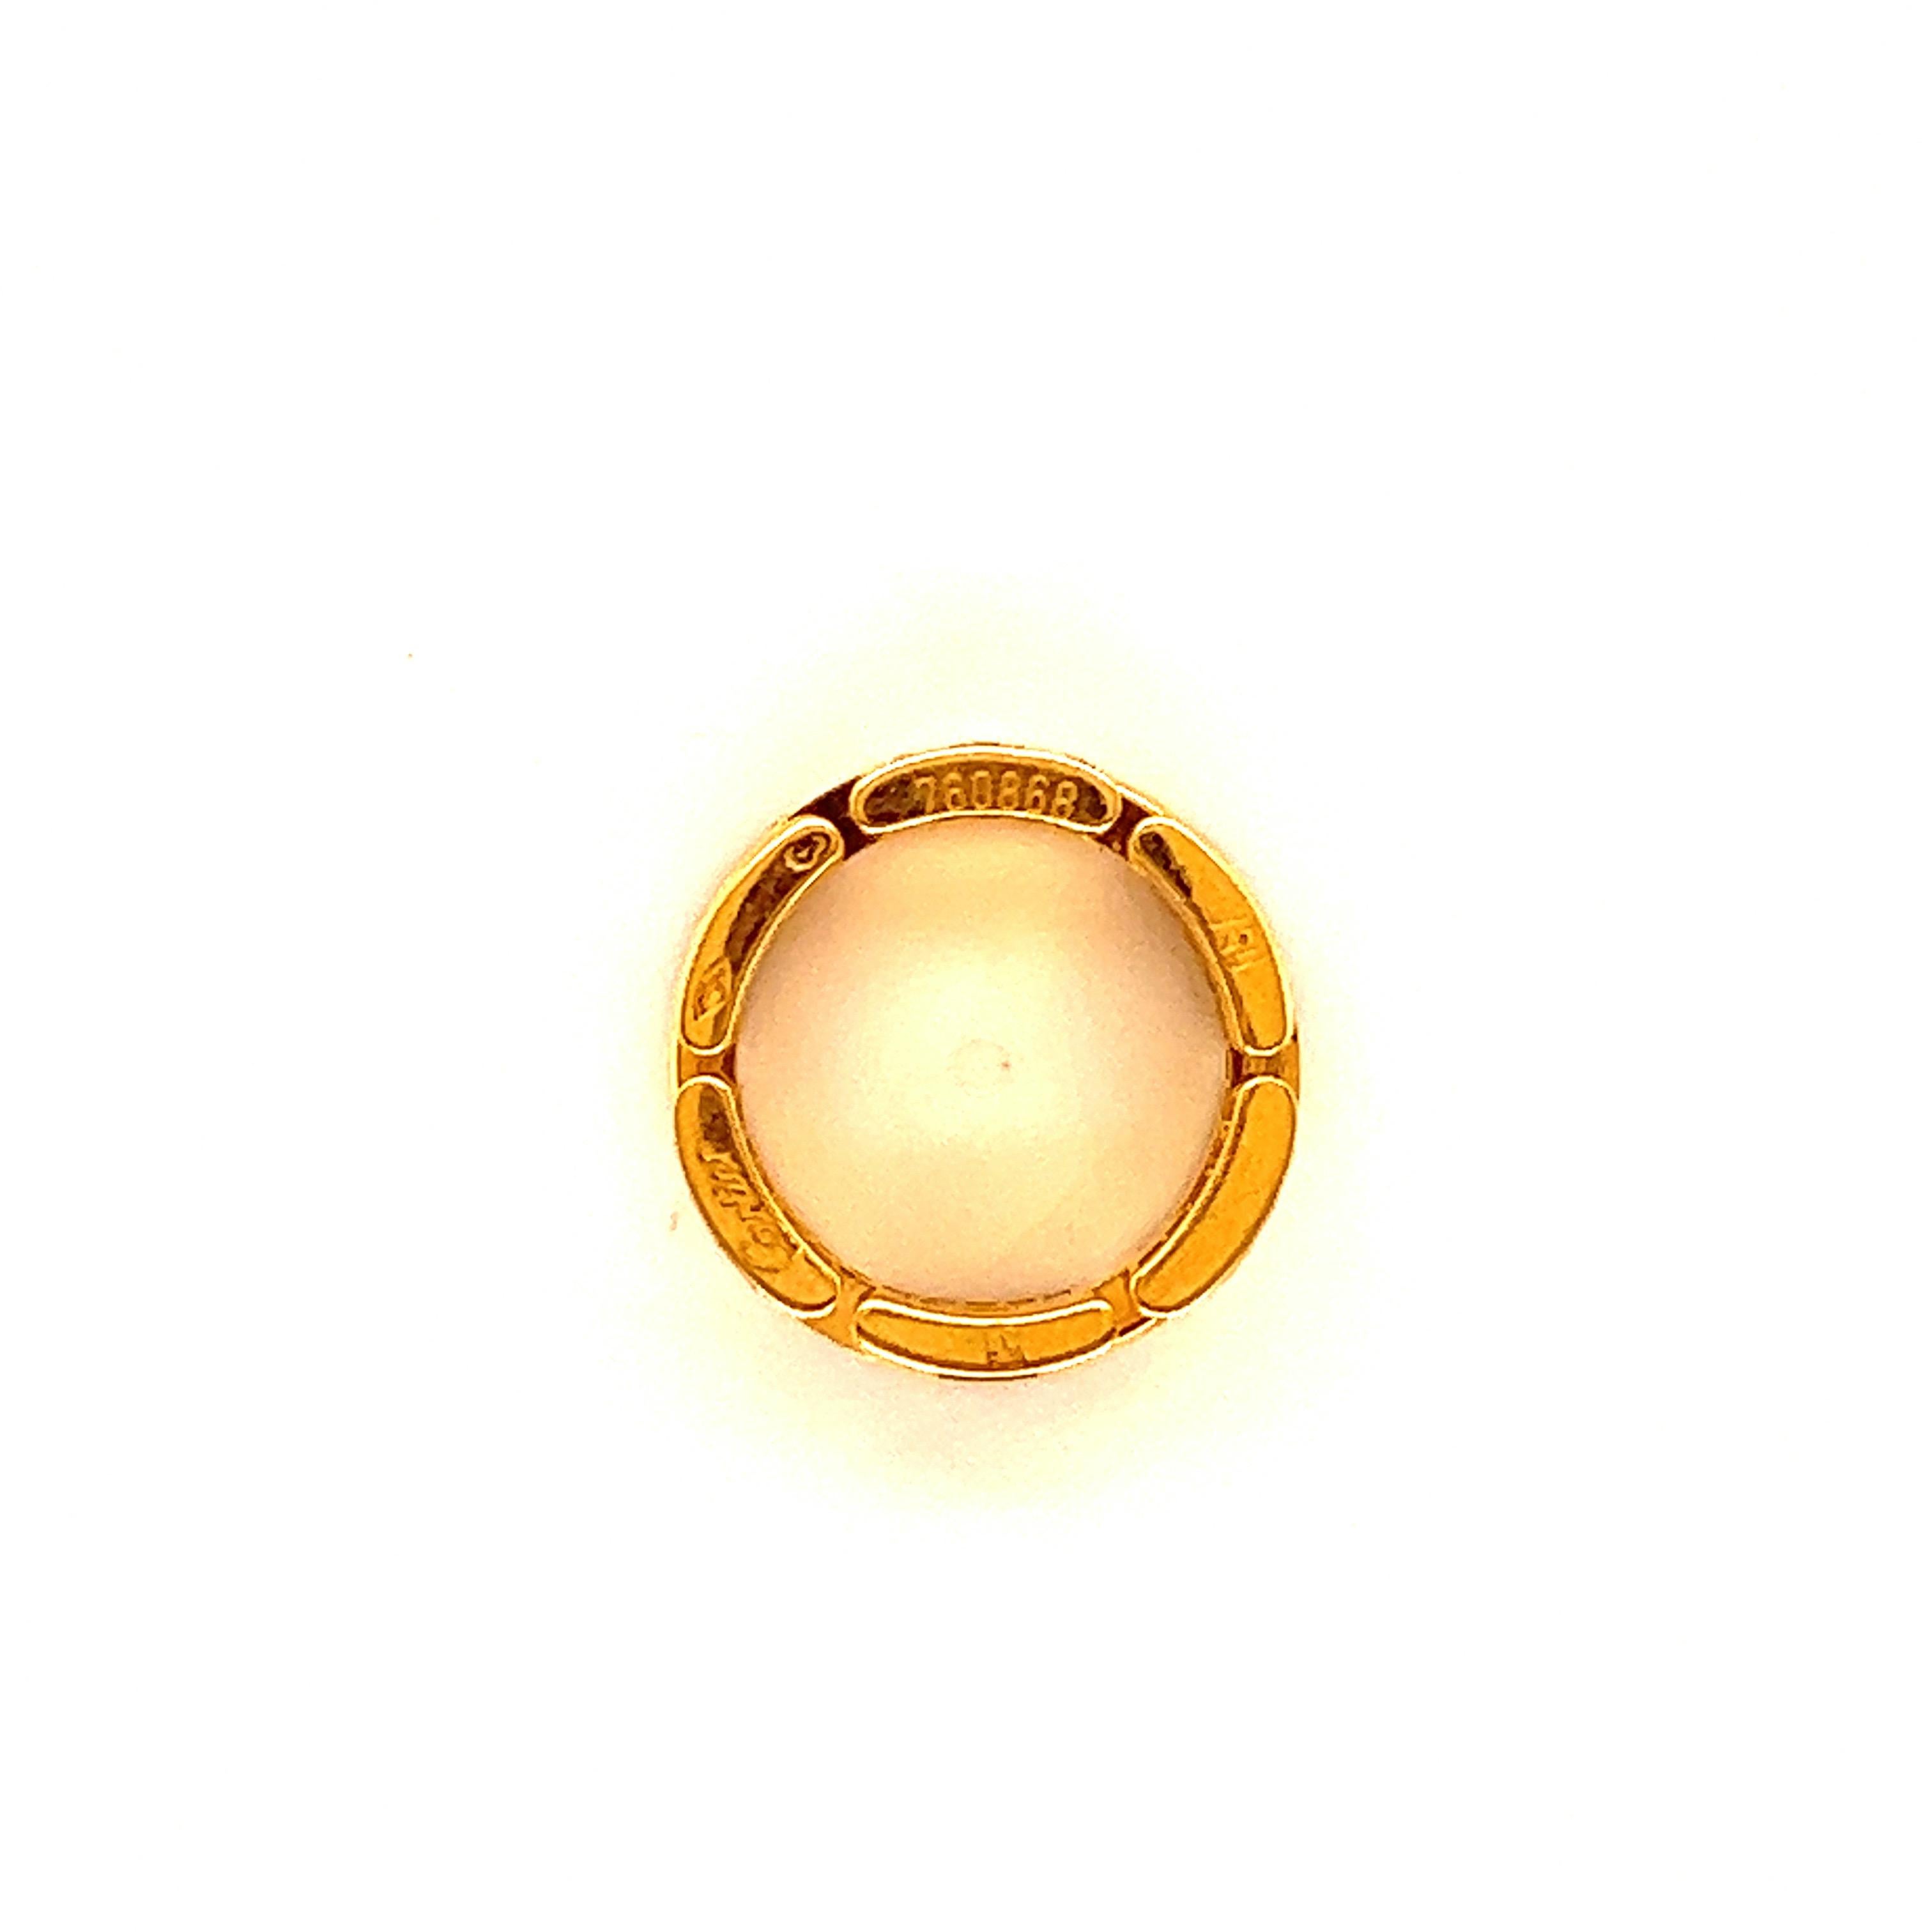 Bague classique Maillon Panthère en or jaune 18 carats, par Cartier. 
Diamants ronds de taille brillant d'environ 1 carat, la plupart de couleur E-F et de pureté VS, sertis sur de l'or jaune 18 carats ; Largeur de la bande 7,5 mm, la bague est une